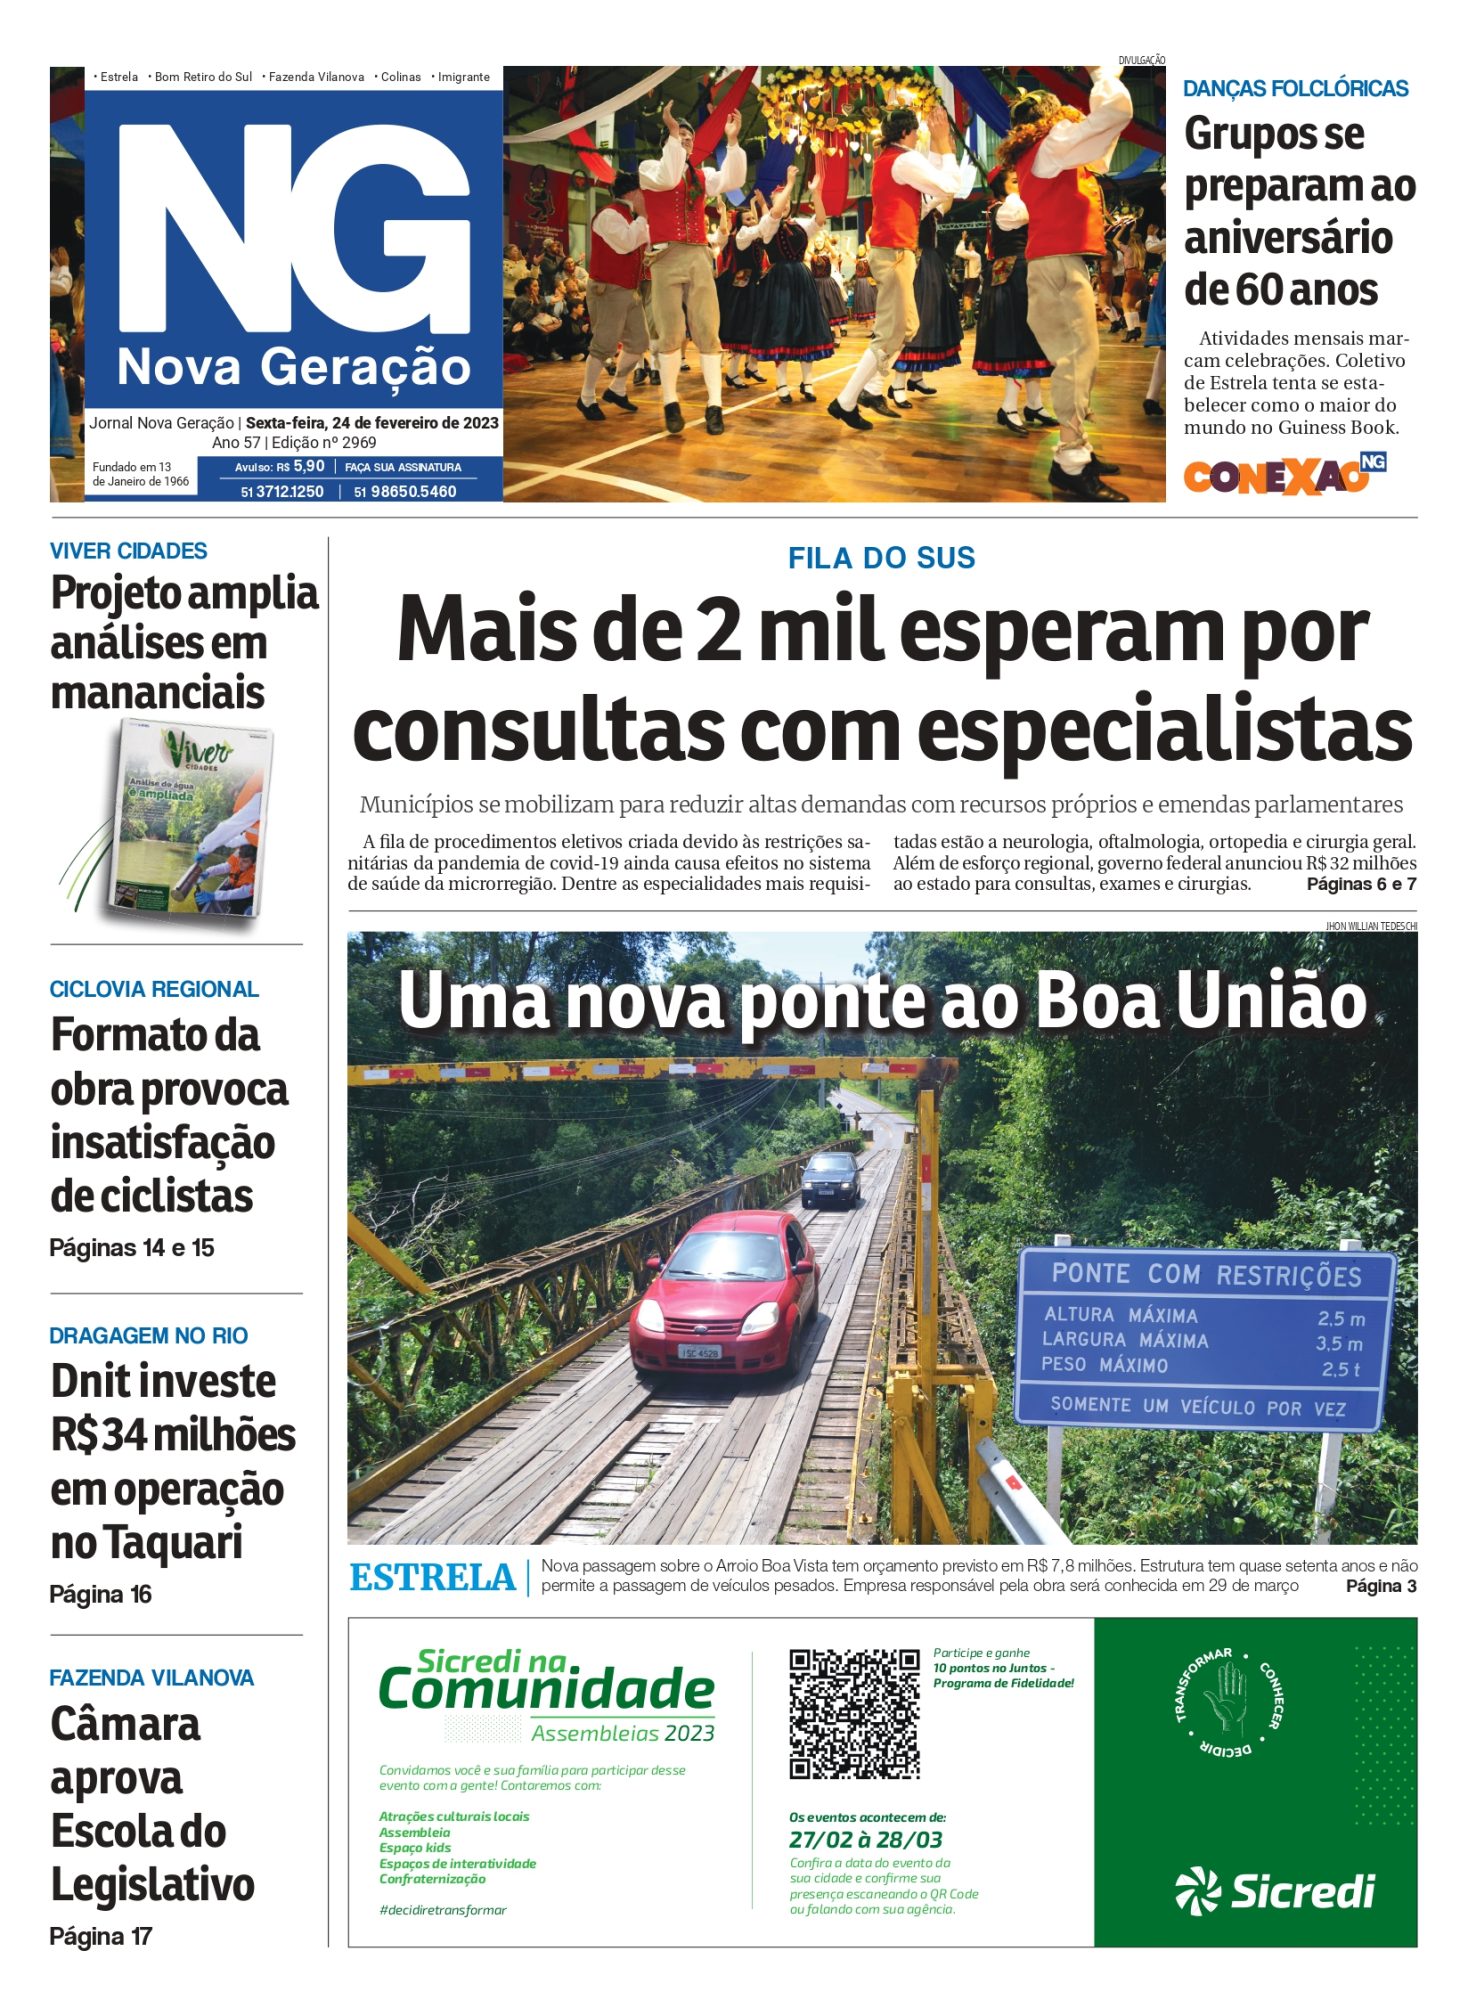 Nova Geração - 31/03/2023 by Jornal A Hora - Issuu